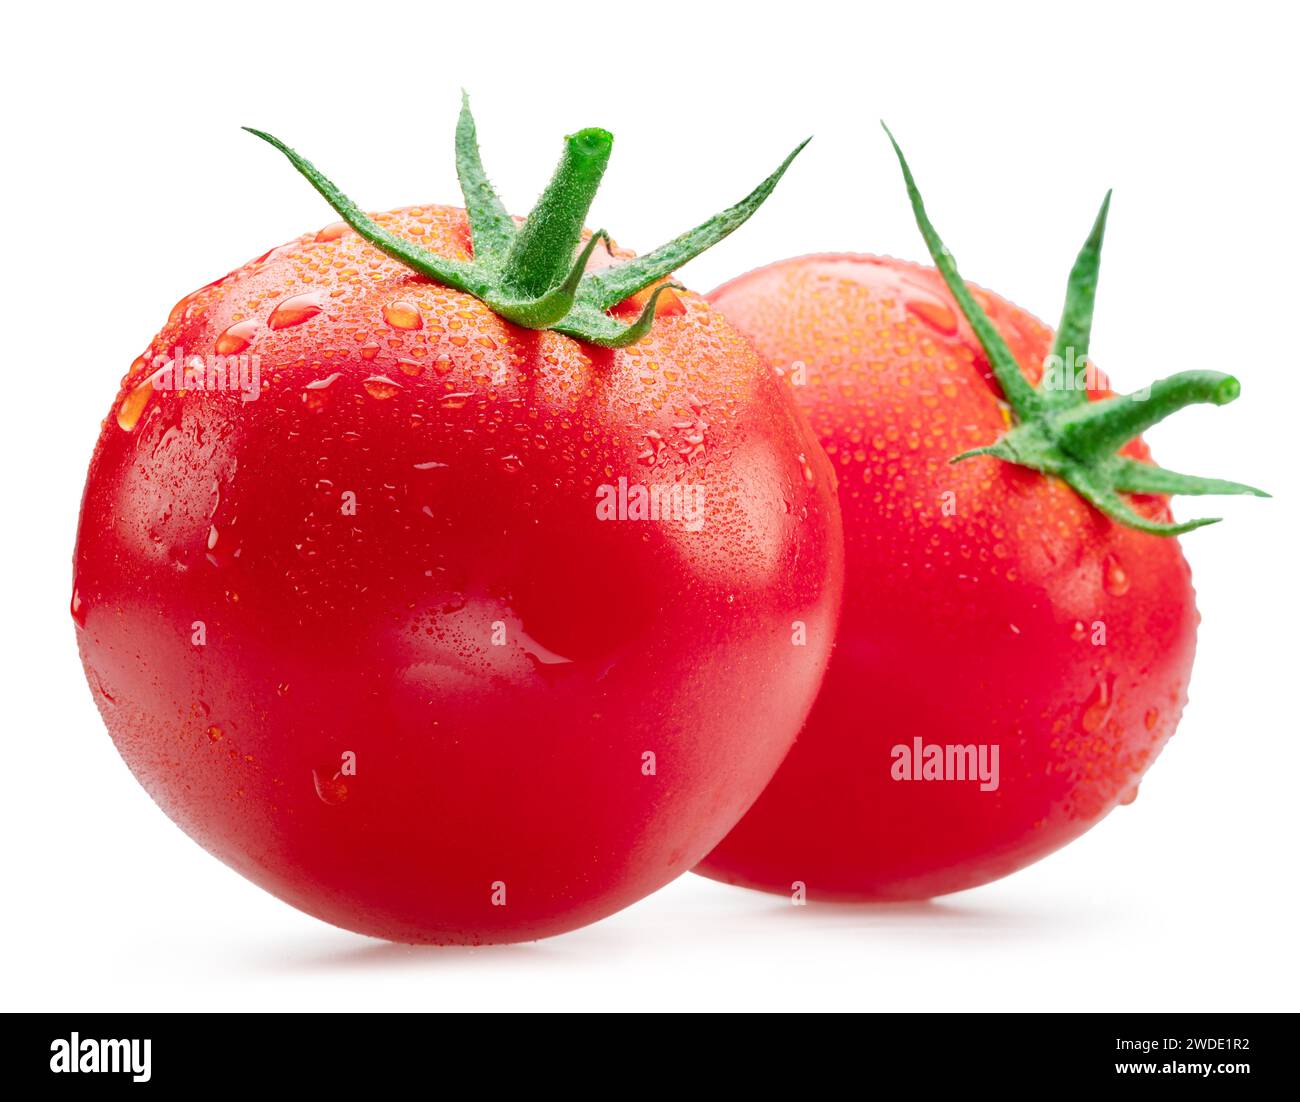 Pomodori rossi appena lavati ricoperti di gocce d'acqua su sfondo bianco. Tracciato di ritaglio. Foto Stock